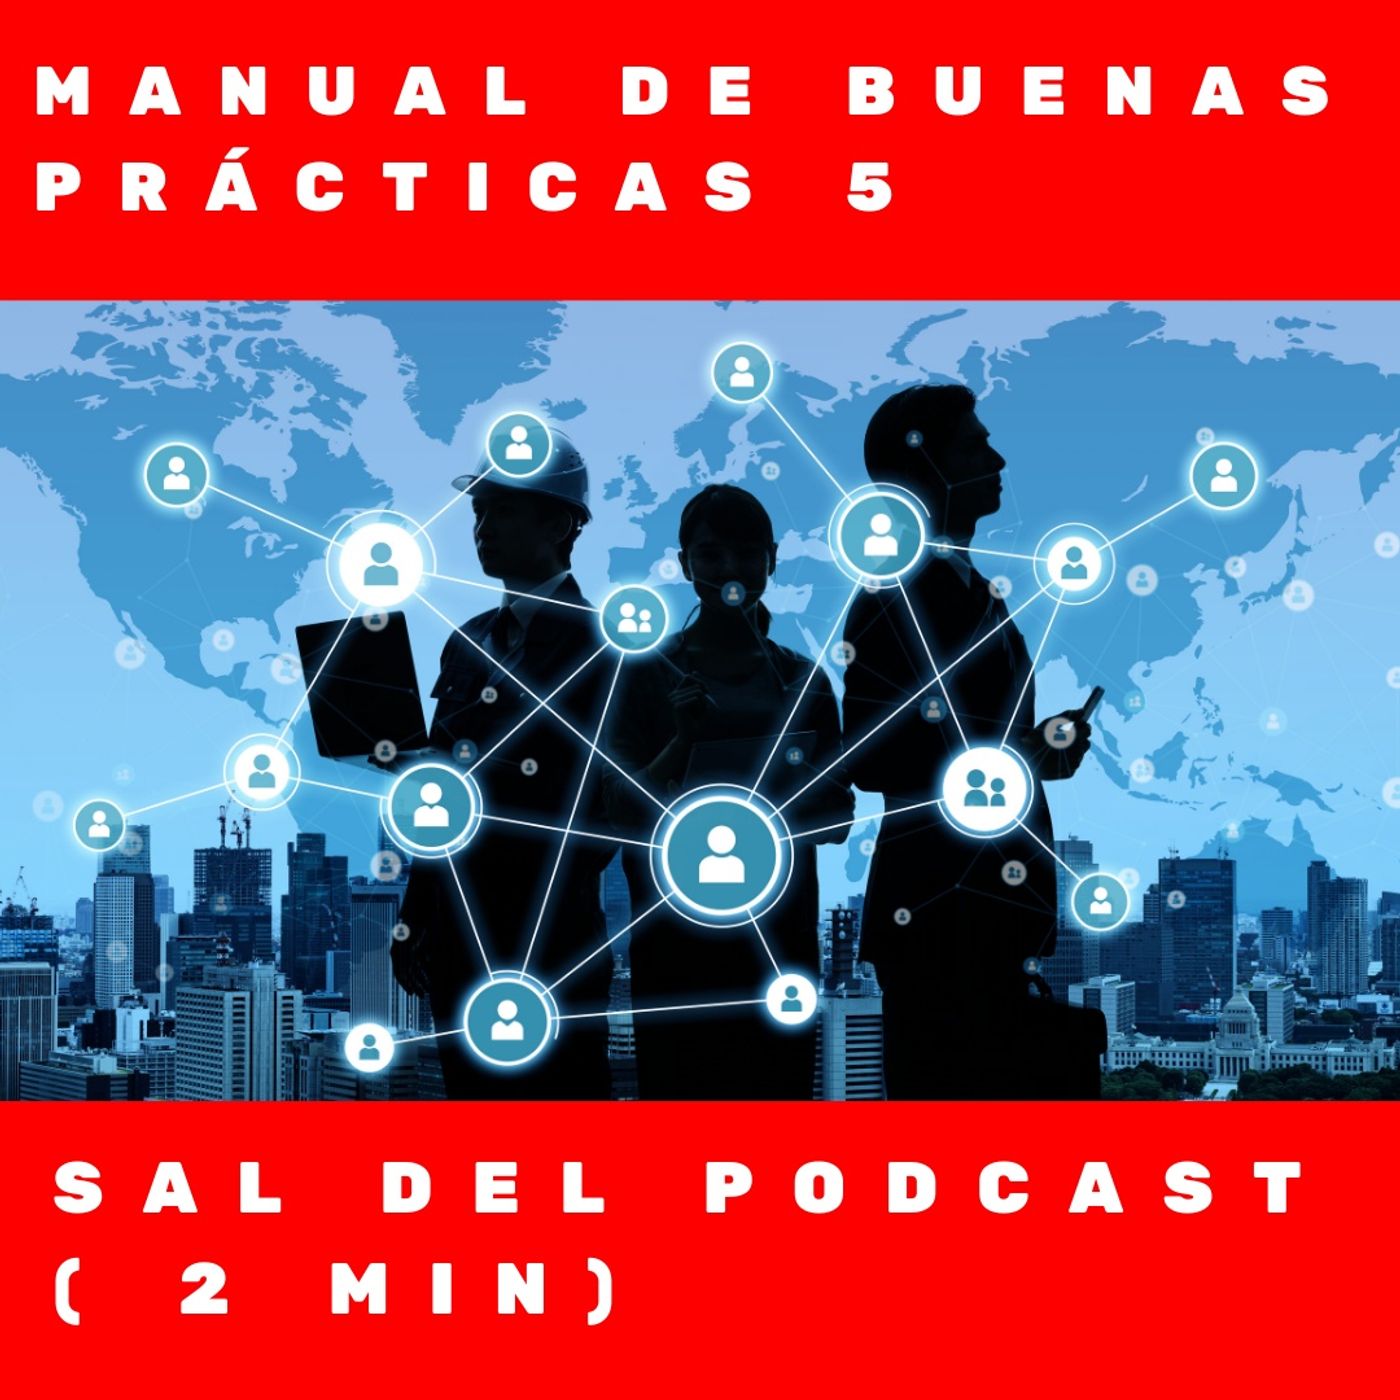 Manual de buenas prácticas 5- Sal del podcast